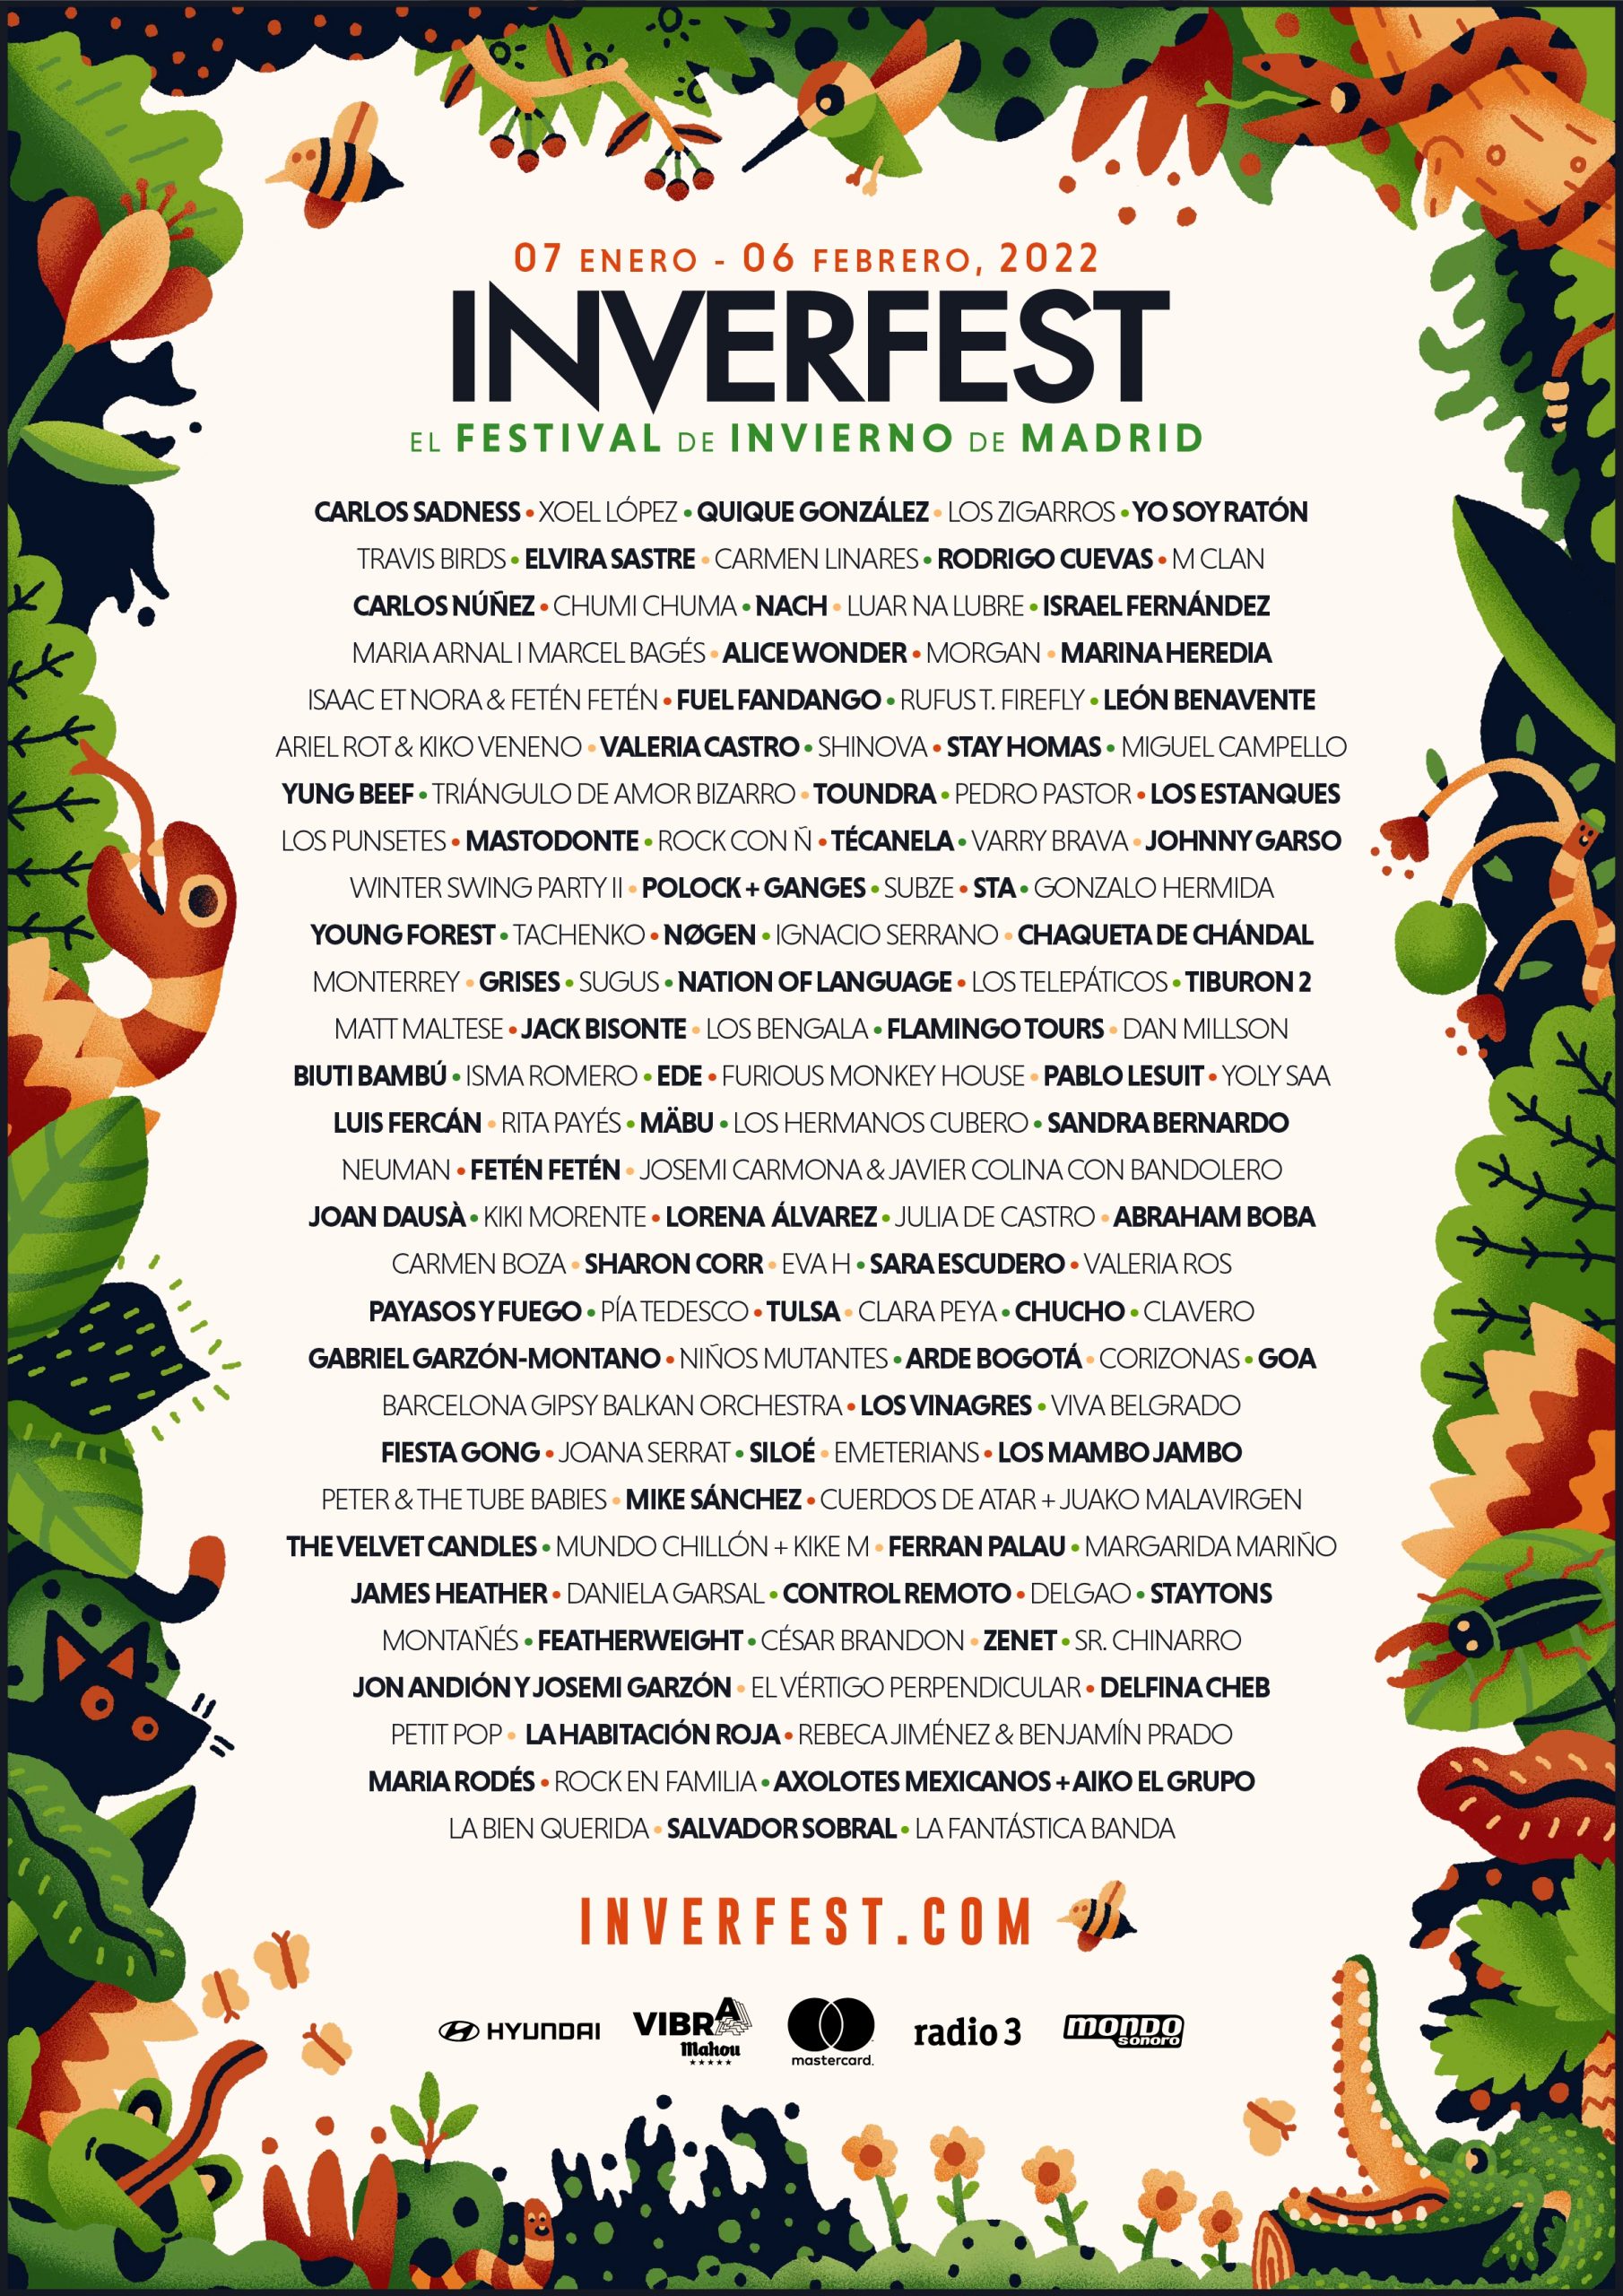 Inverfest | Fiesta Gong